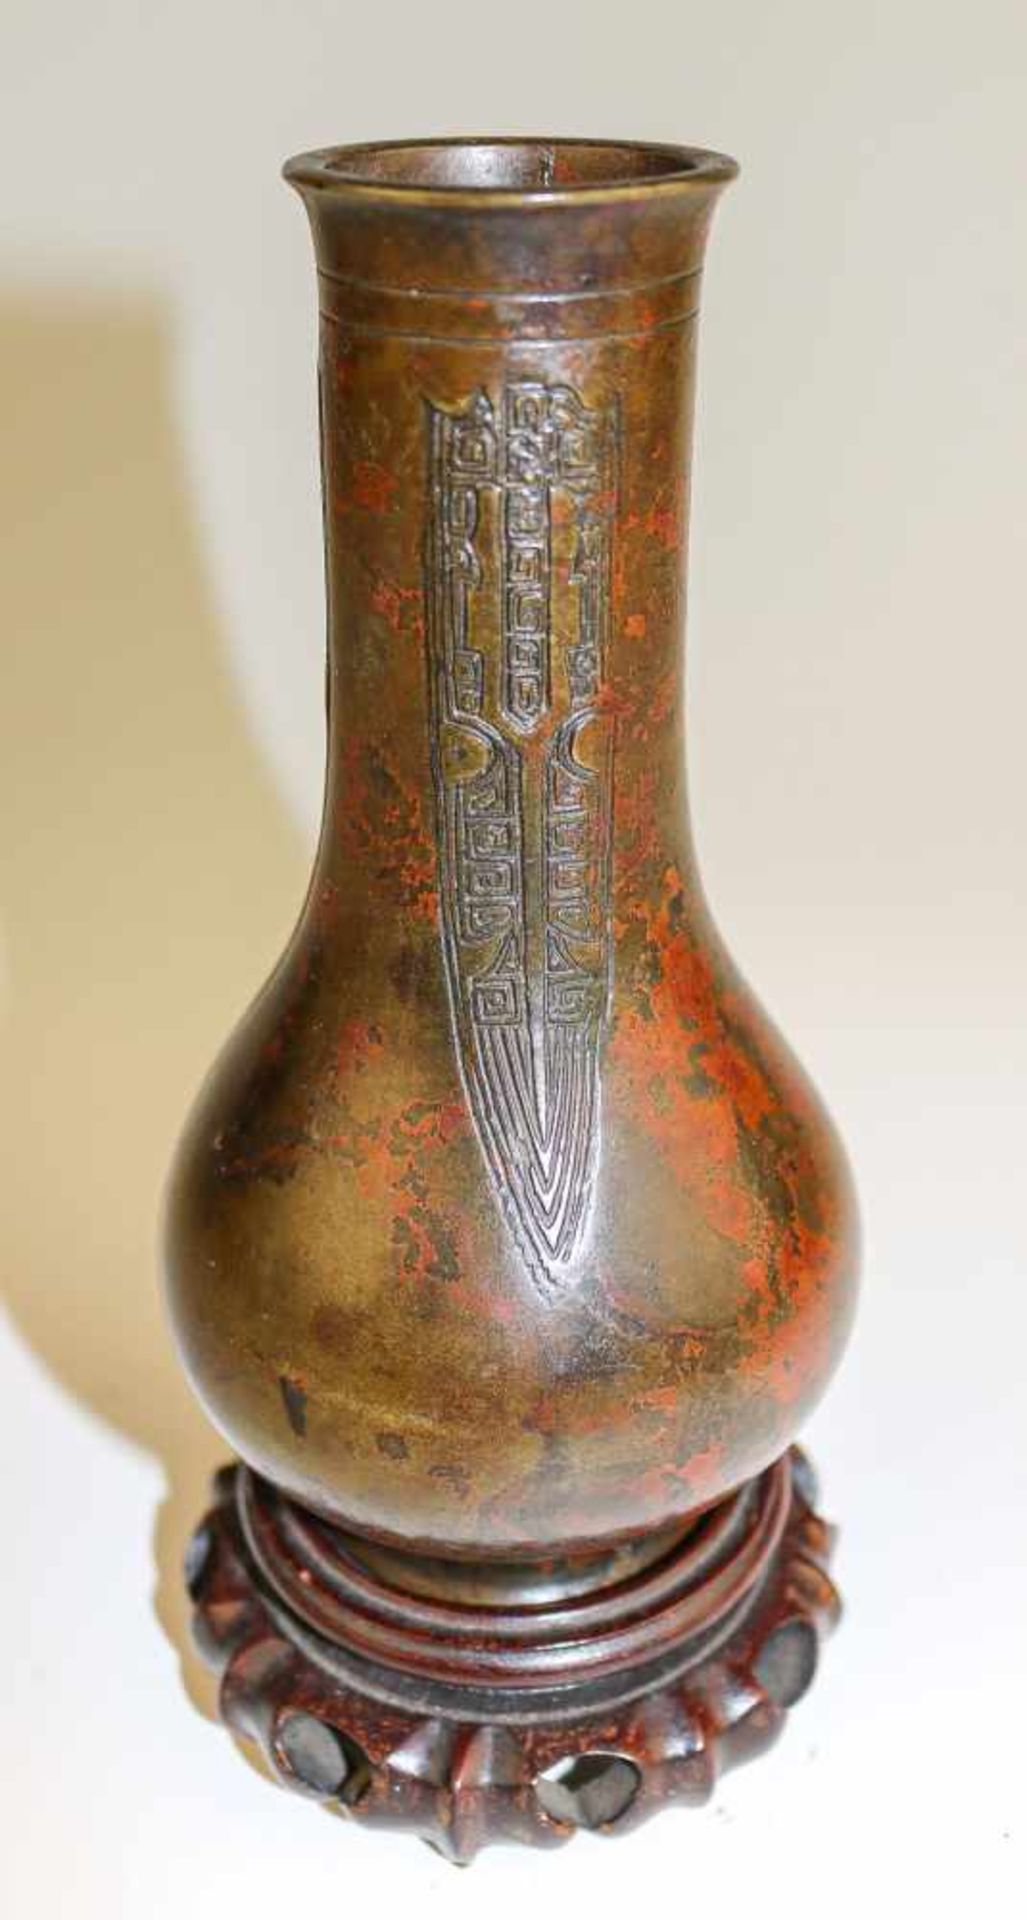 Kleine bauchige VaseJapan, 19. Jh.Bronze, dunkel bzw. teilw. rötlich patiniert. In leichtem Relief